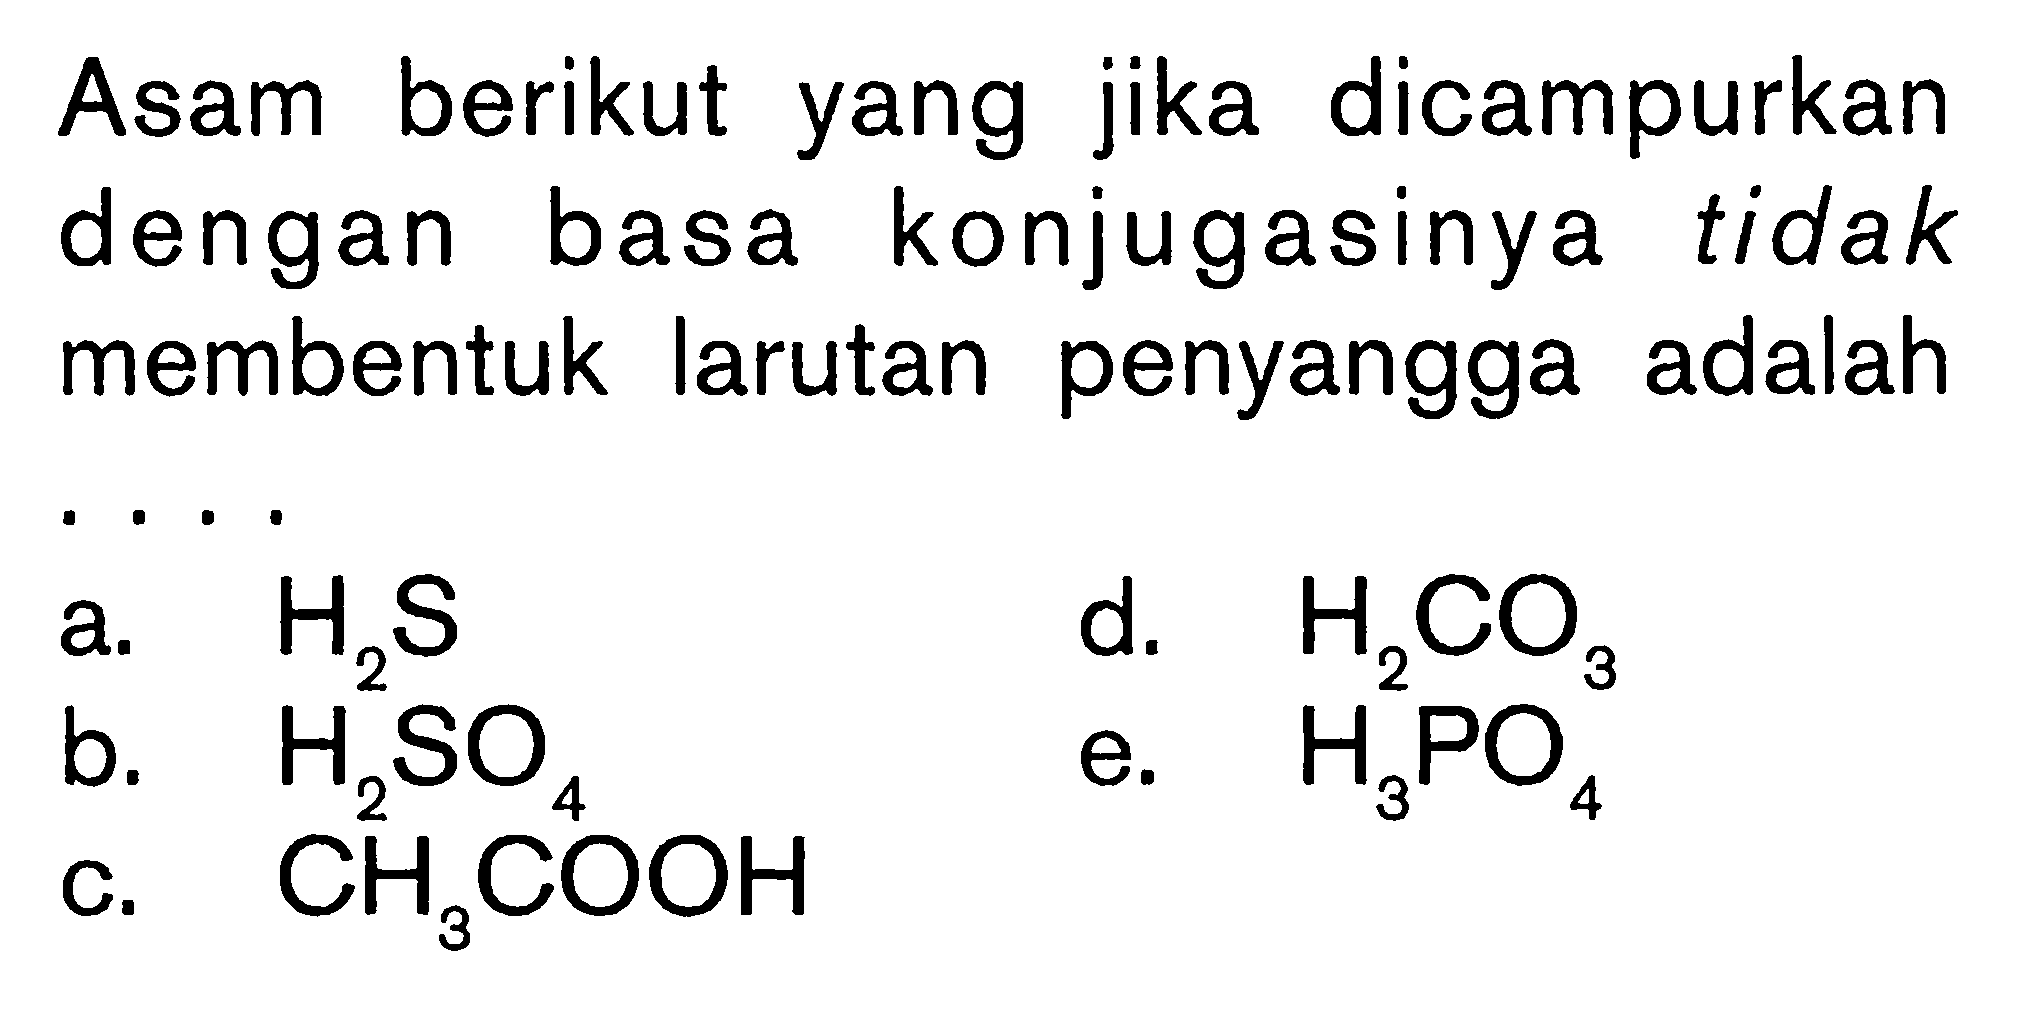 Asam berikut yang jika dicampurkan dengan basa konjugasinya tidak membentuk larutan penyangga adalah .... a.  H2S b.  H2SO4 c.  CH3COOH  d.  H2CO3  e.  H3PO4 